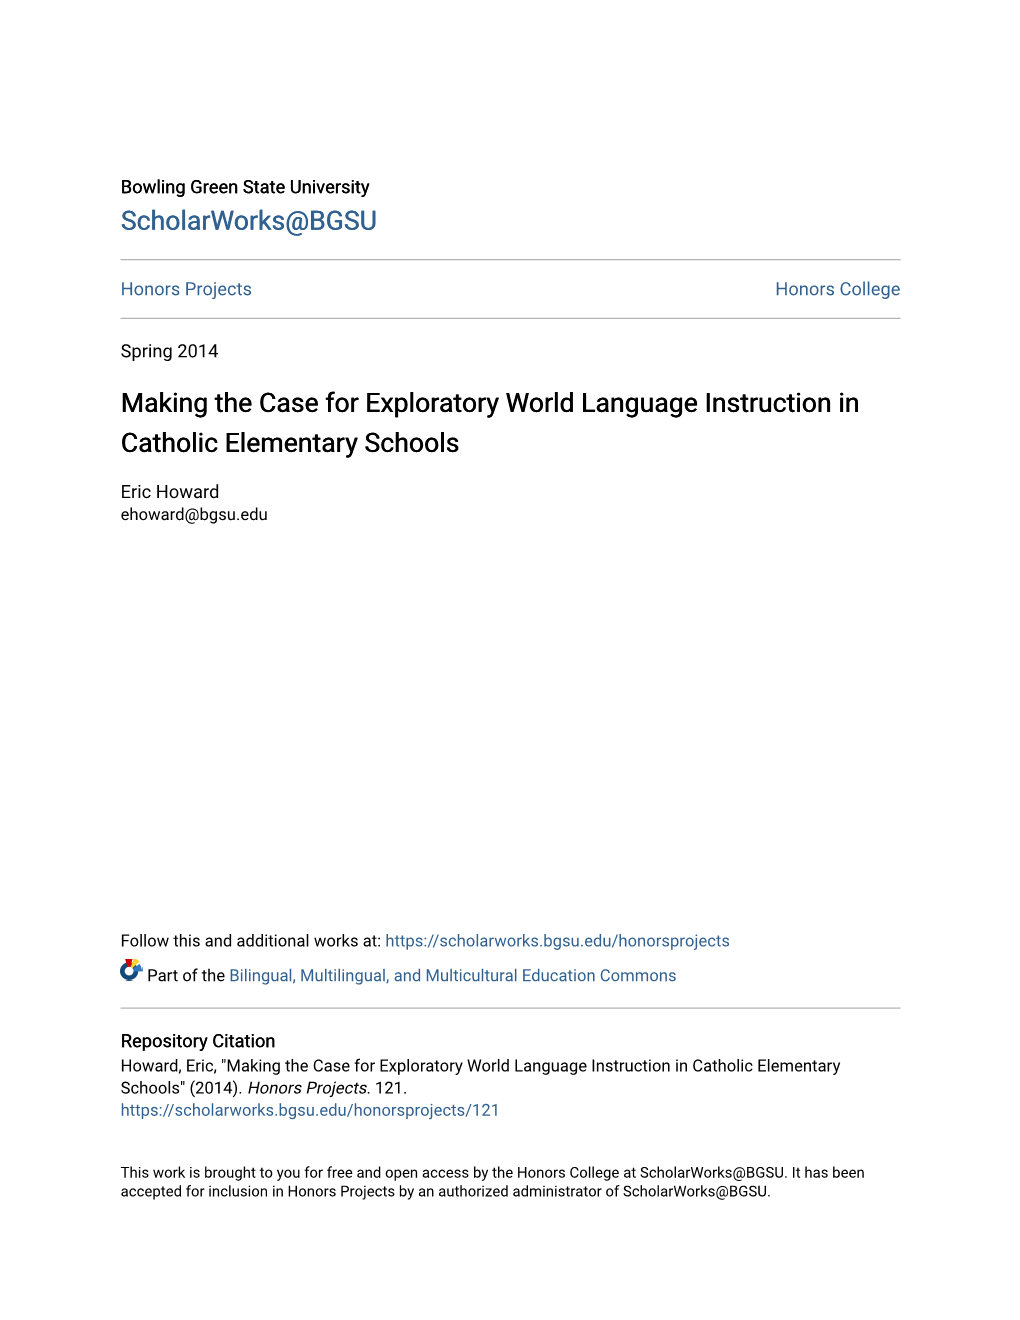 Making the Case for Exploratory World Language Instruction in Catholic Elementary Schools